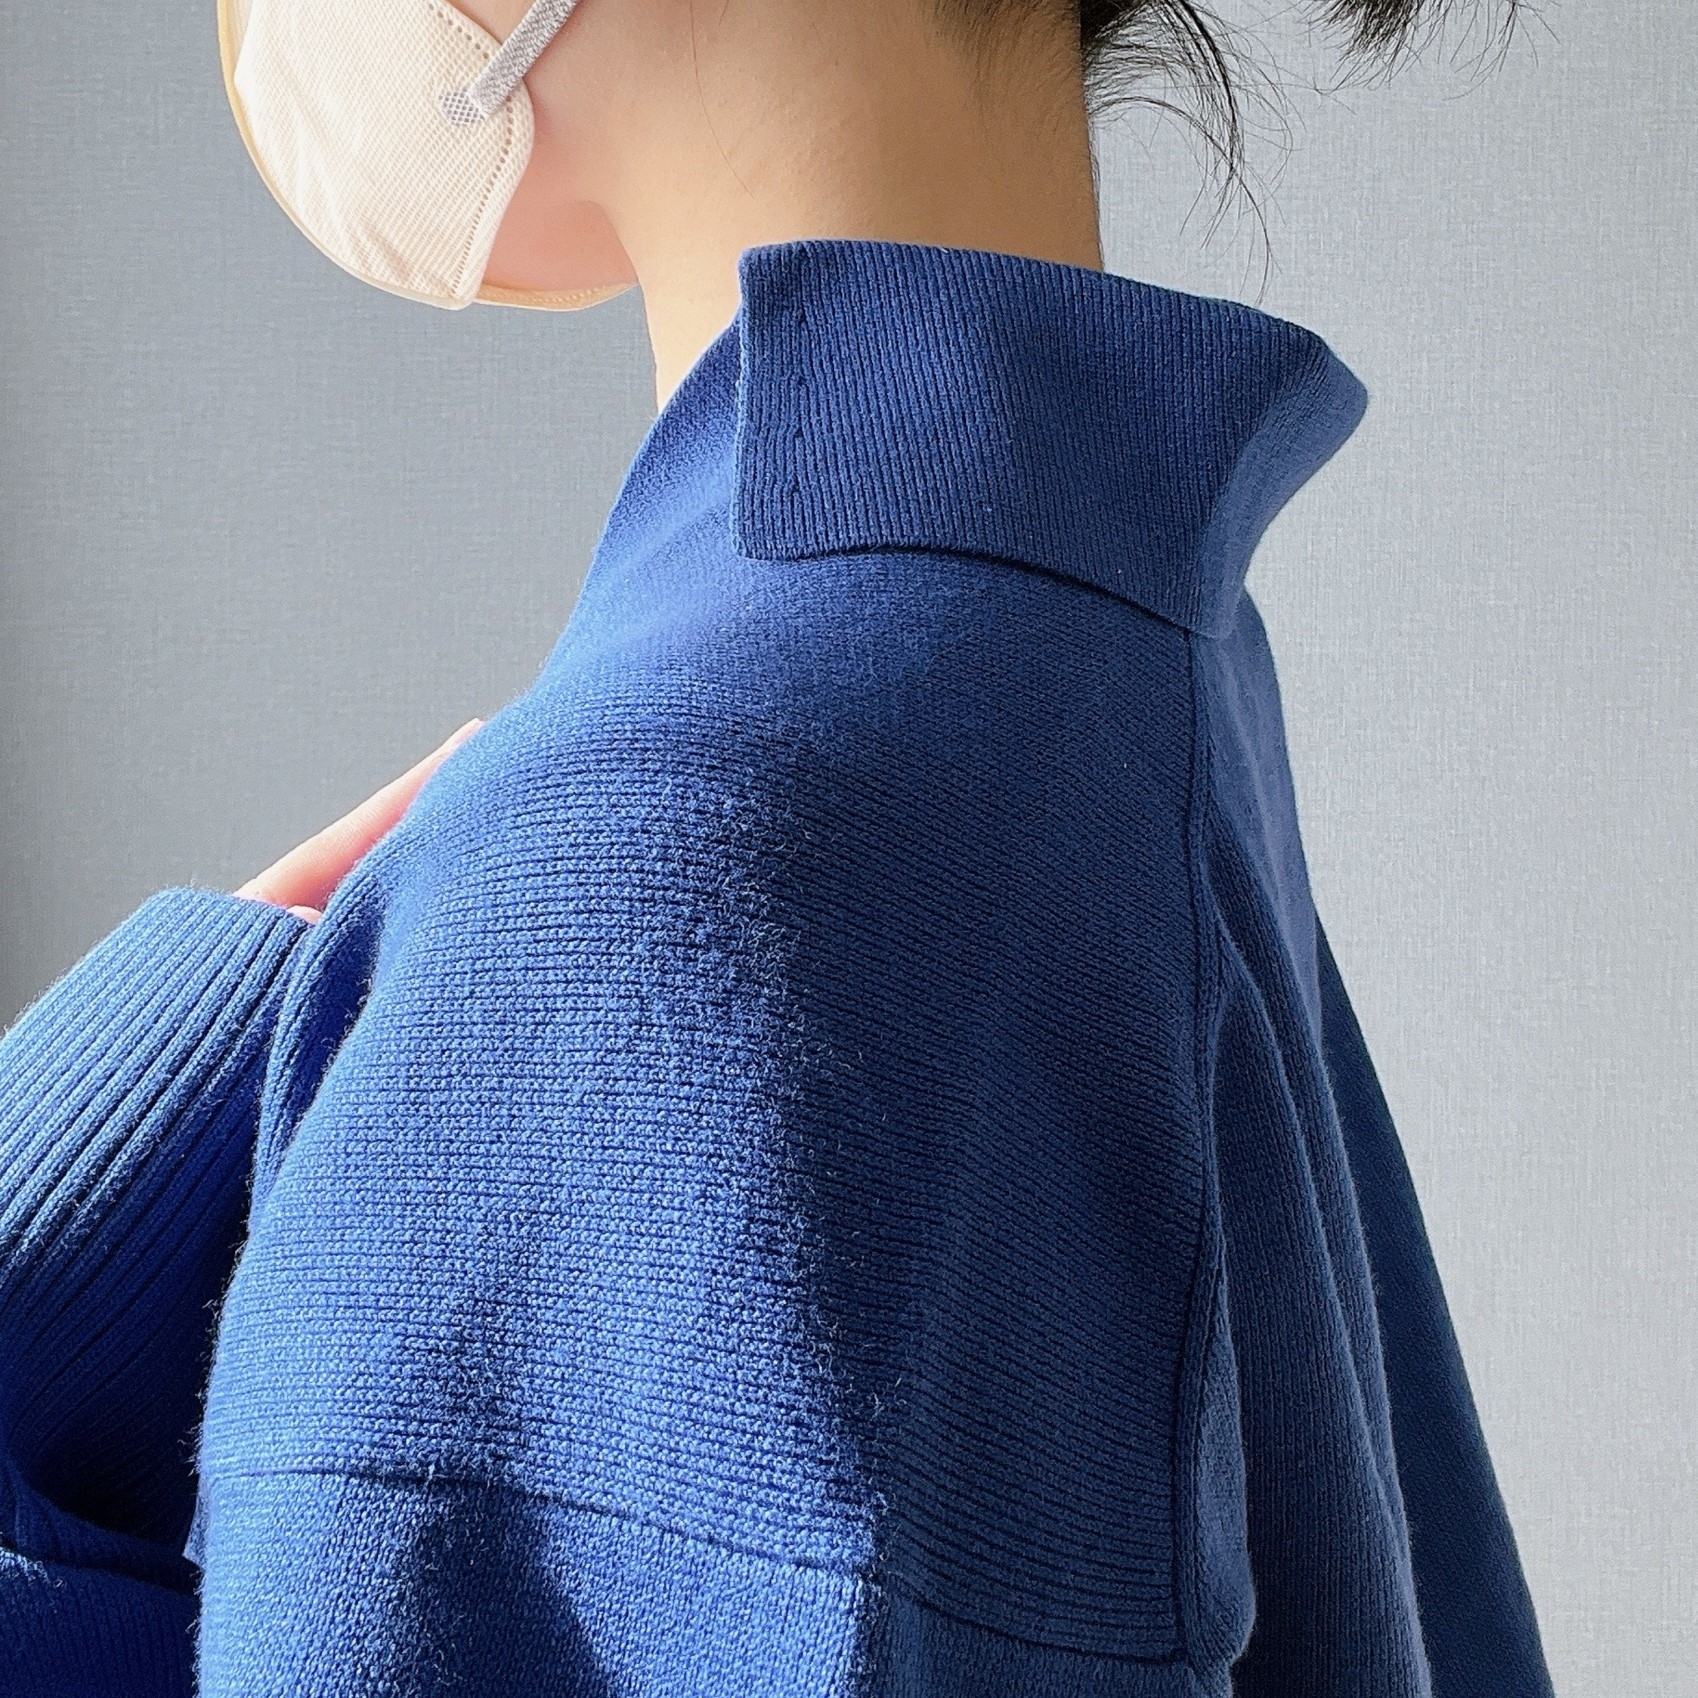 無印良品のオススメのセーター「婦人 洗えるミラノリブ編みスキッパーポロセーター」